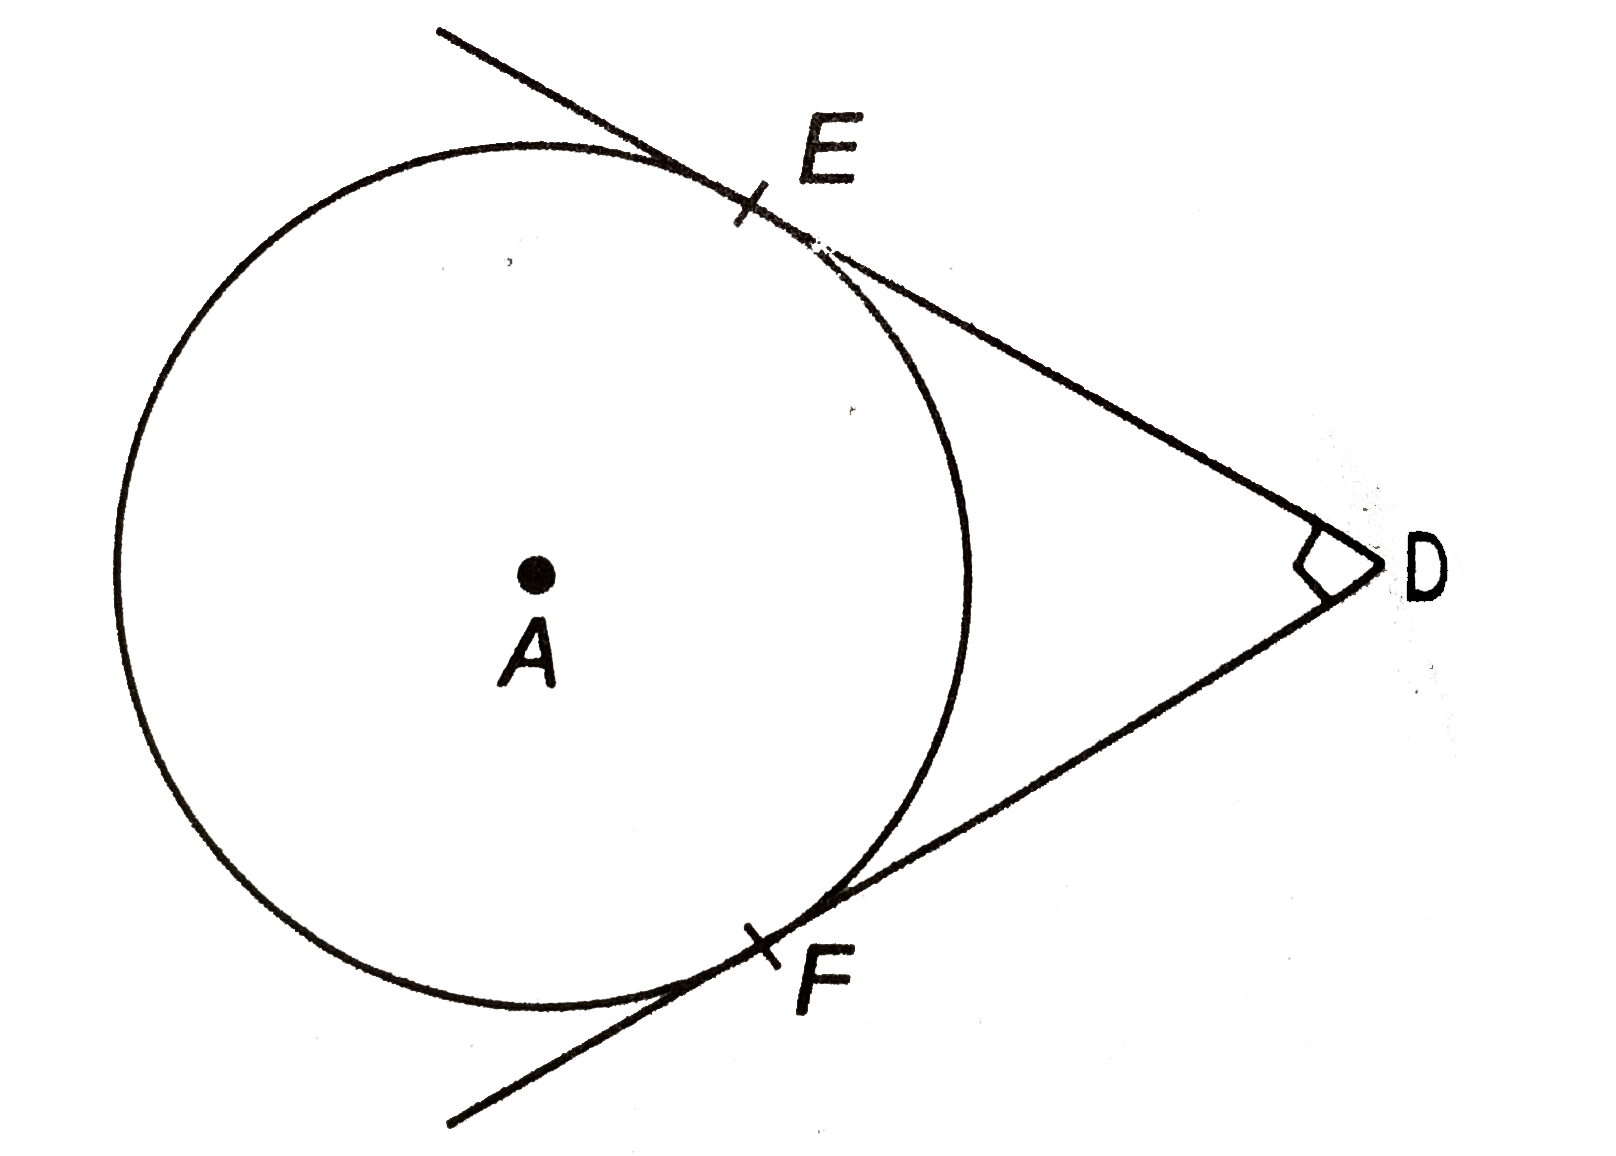 चित्र में, A केन्द्र के वृत्त में एक बाह्य बिन्दु D से स्पर्श रेखायें DE और DF खींची गई है। यदि DE =5 सेमी और DEbotDF तो वृत्त की त्रिज्या ज्ञात कीजिए।